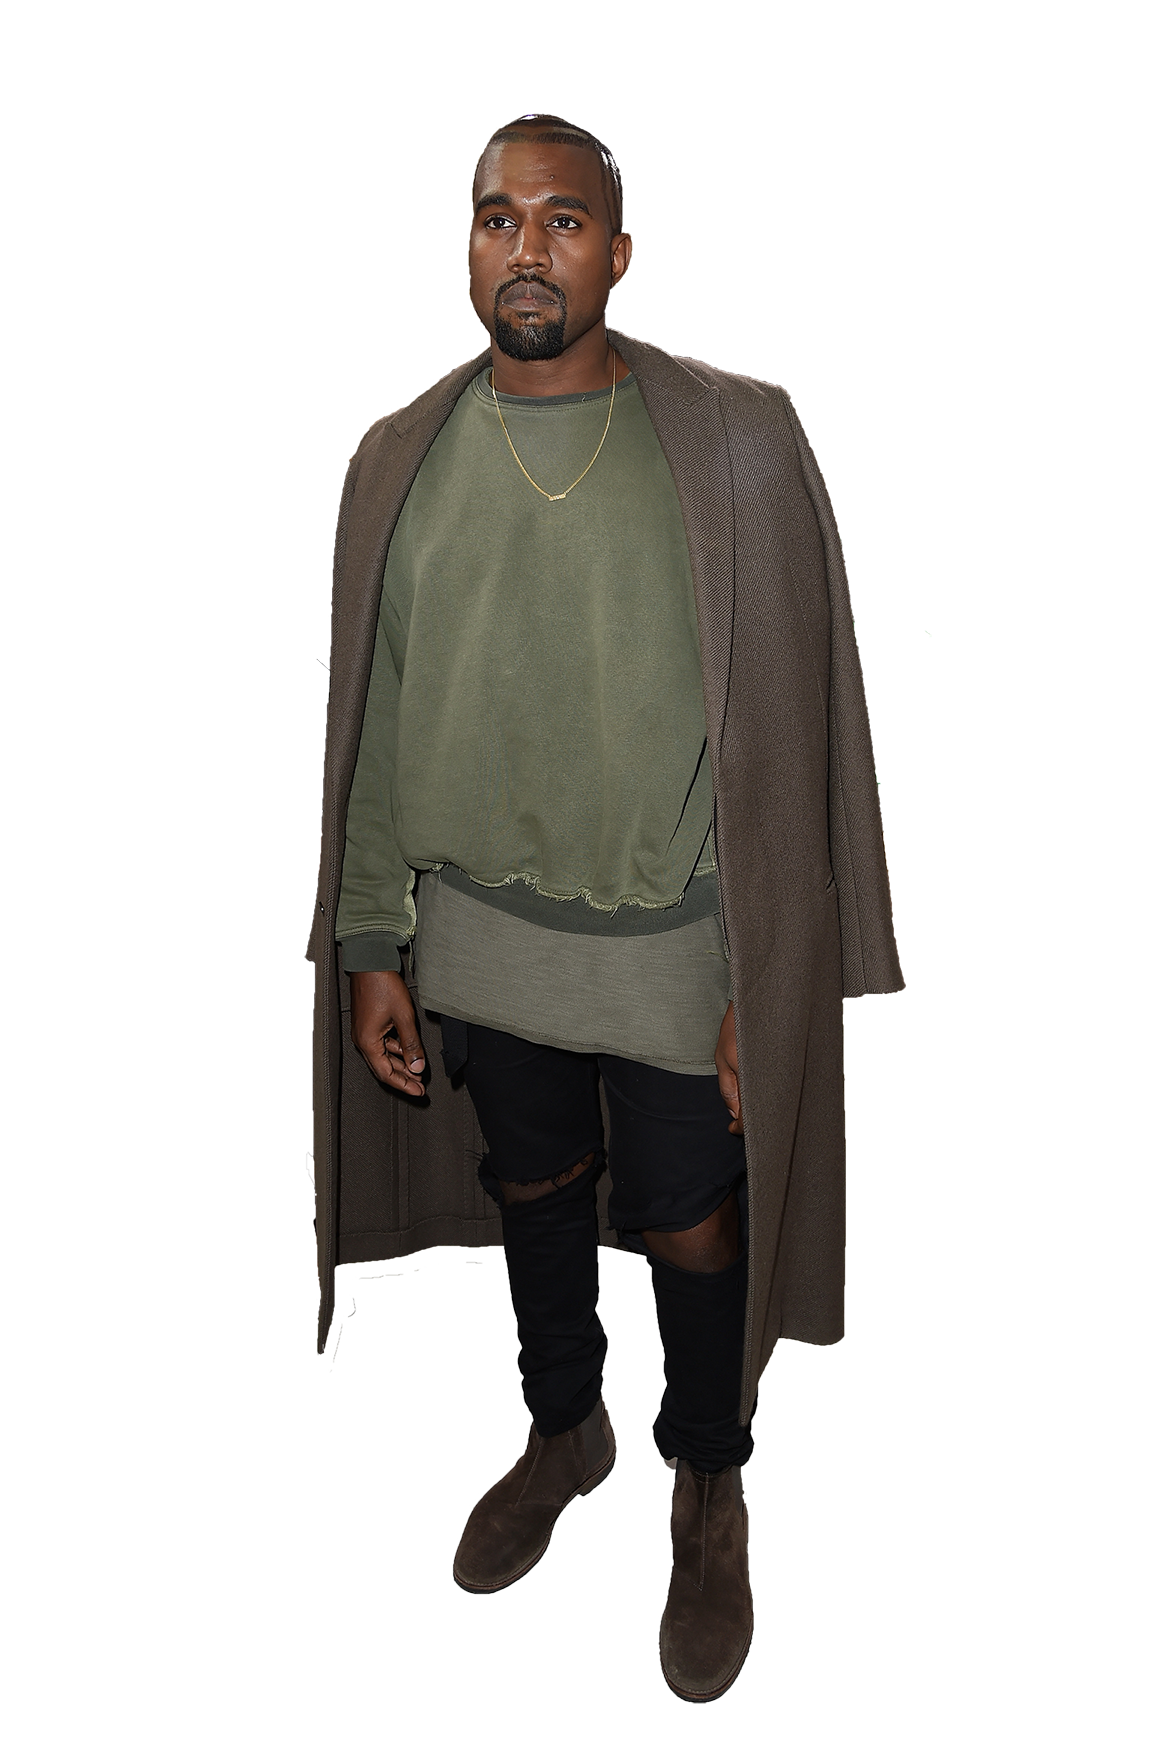 Download PNG image - Rapper Kanye West PNG Transparent Image 